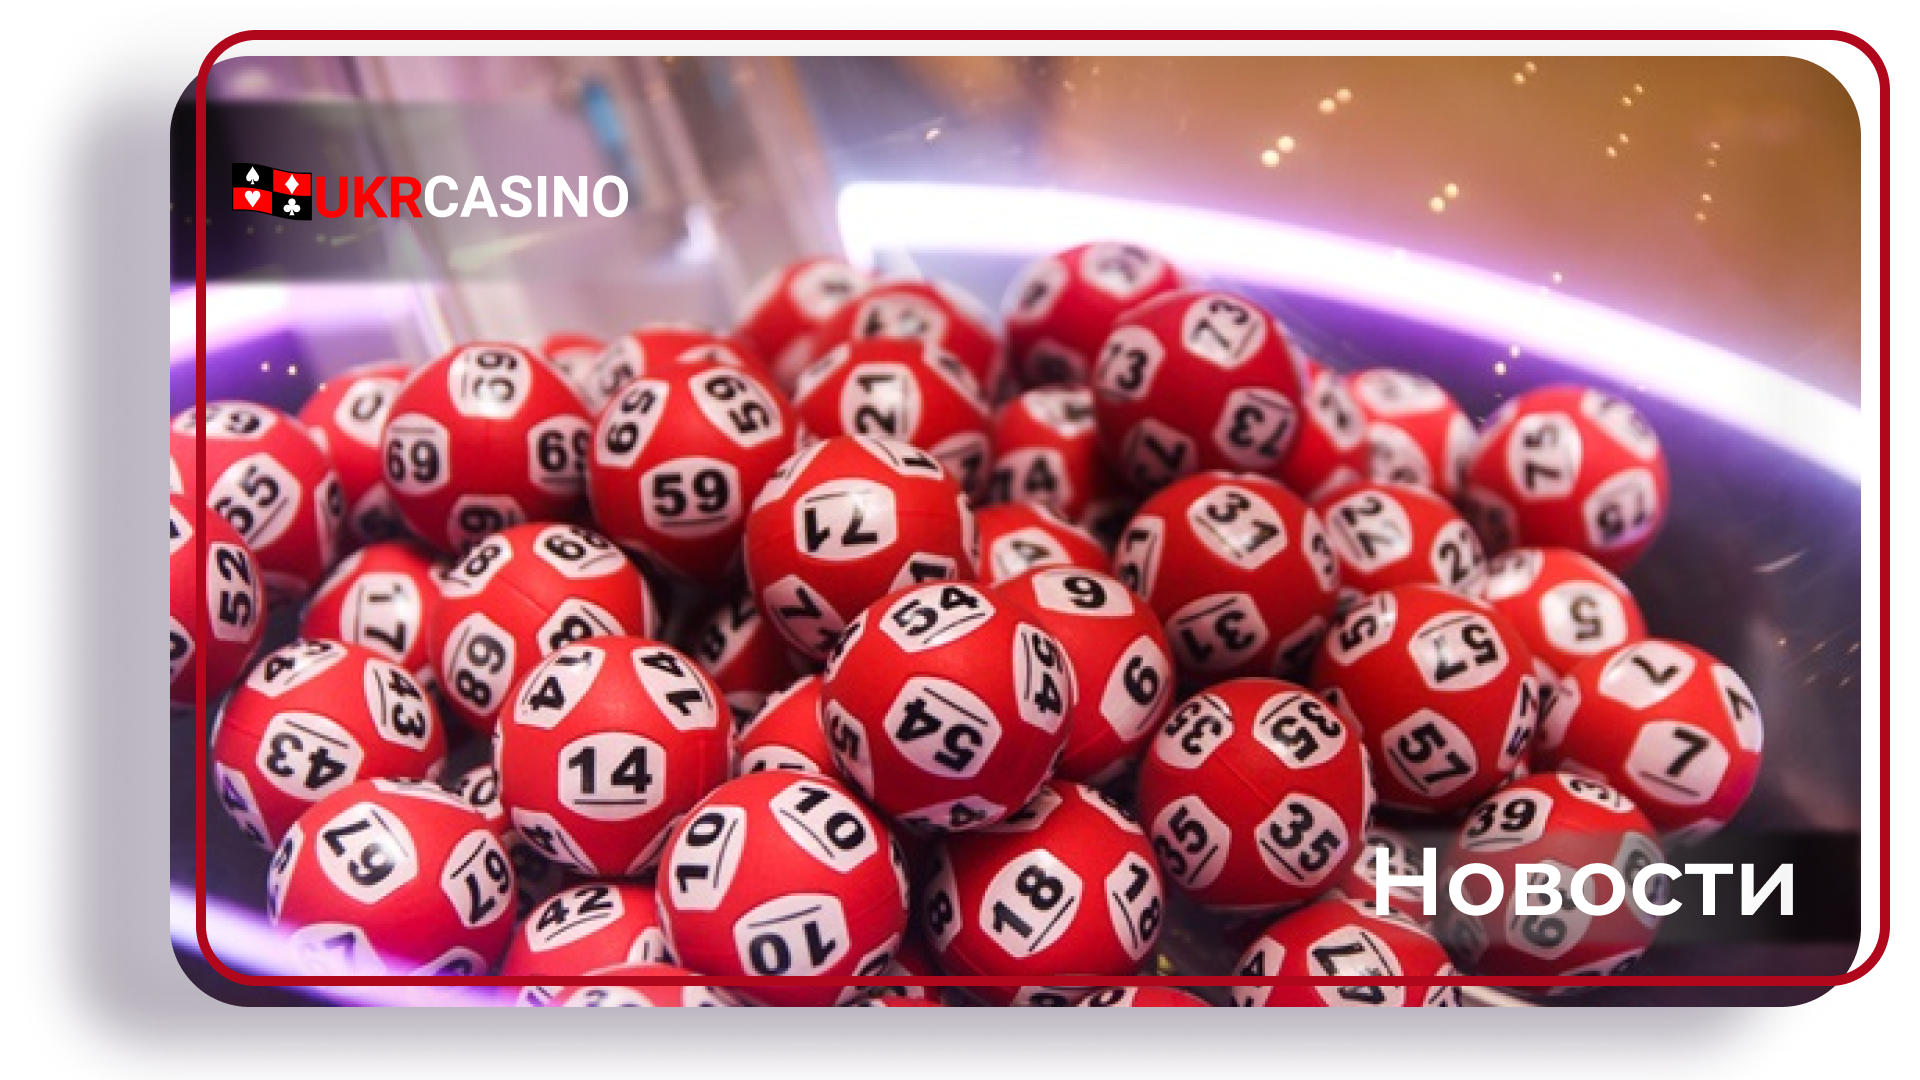 Джекпот лотереи Powerball в США достиг 575 миллионов долларов